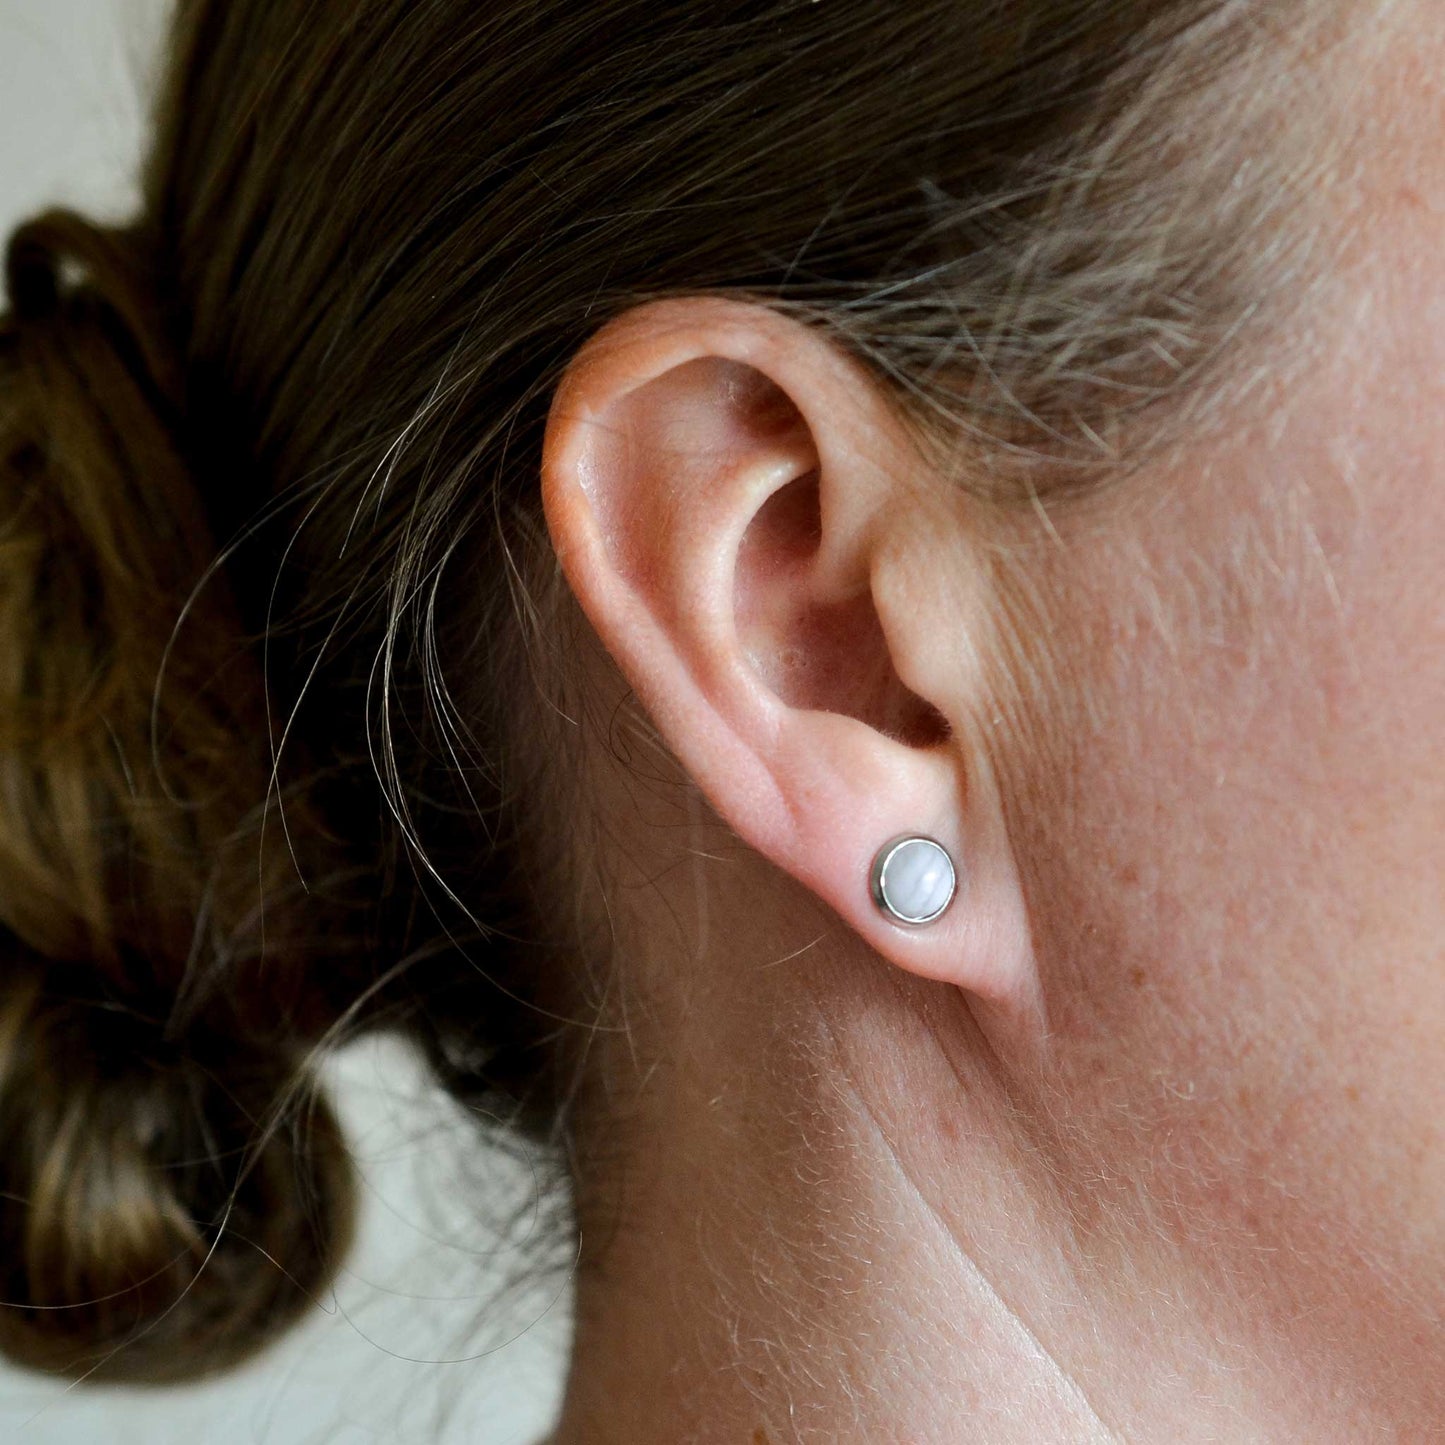 Woman wearing pale Blue Lace Agate stud earring in earlobe